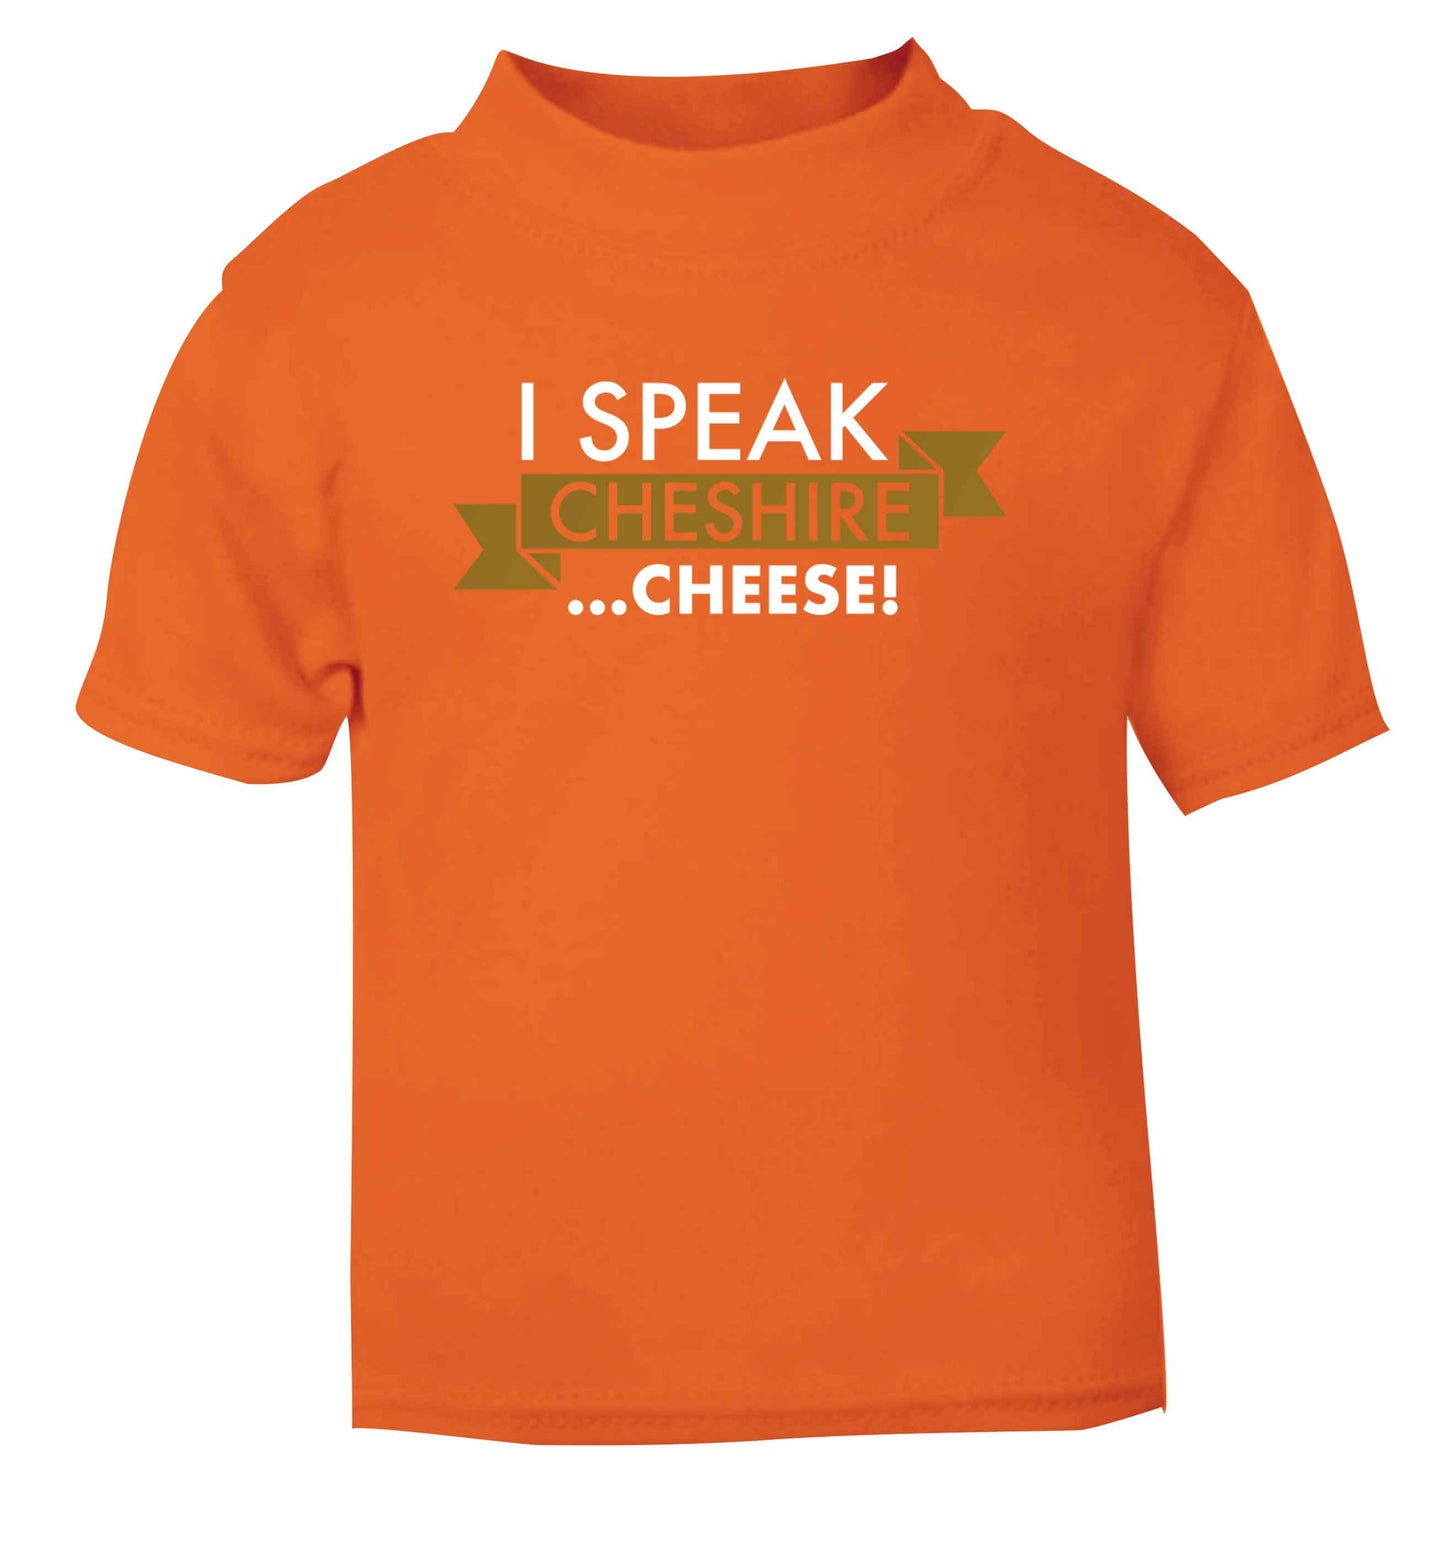 I speak Cheshire cheese orange Baby Toddler Tshirt 2 Years